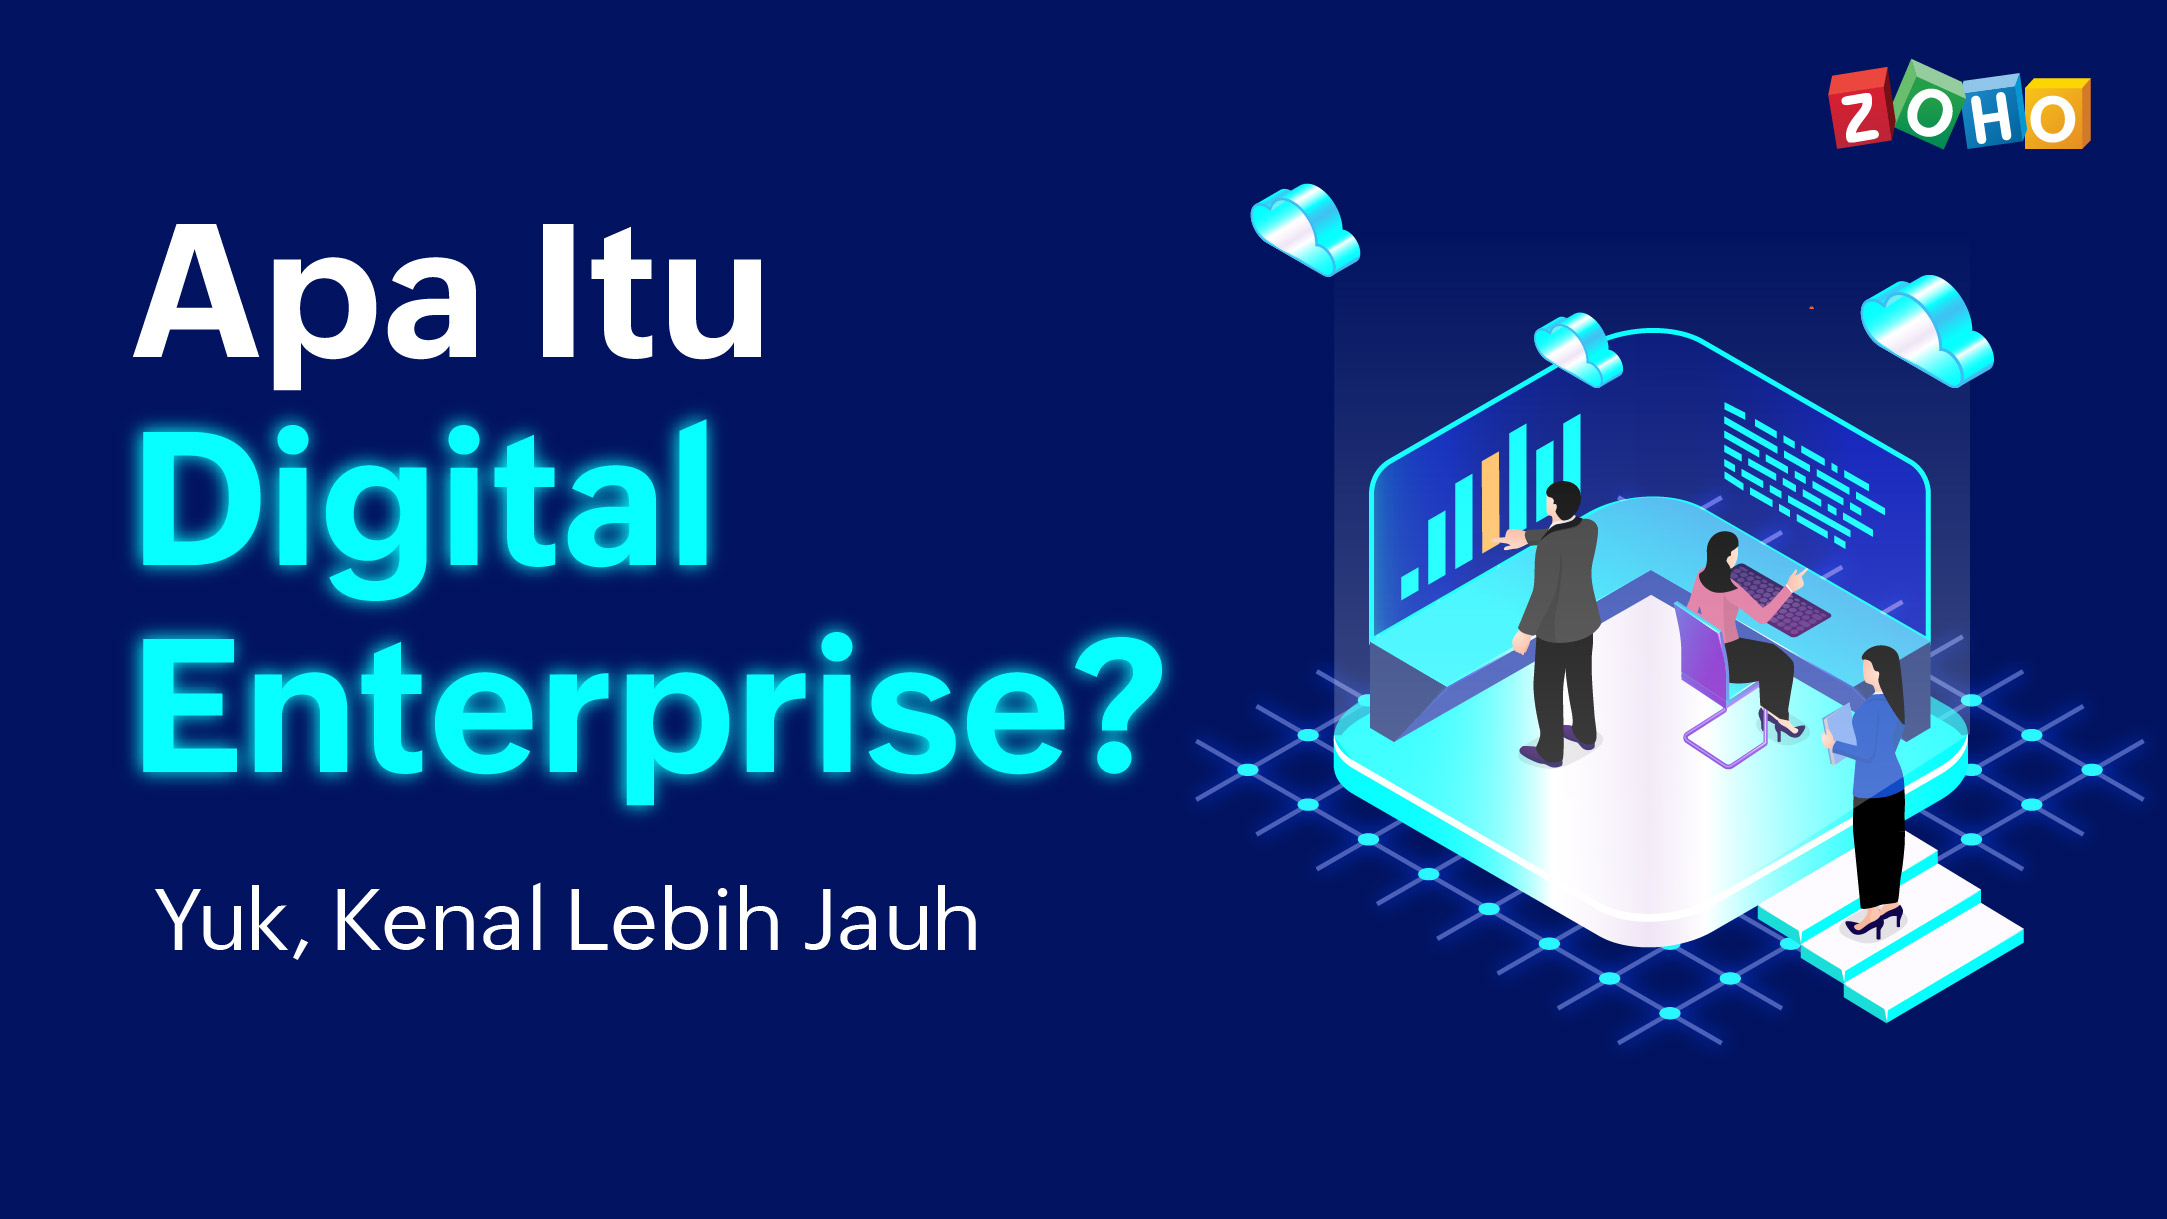 Apa itu digital enterprise?